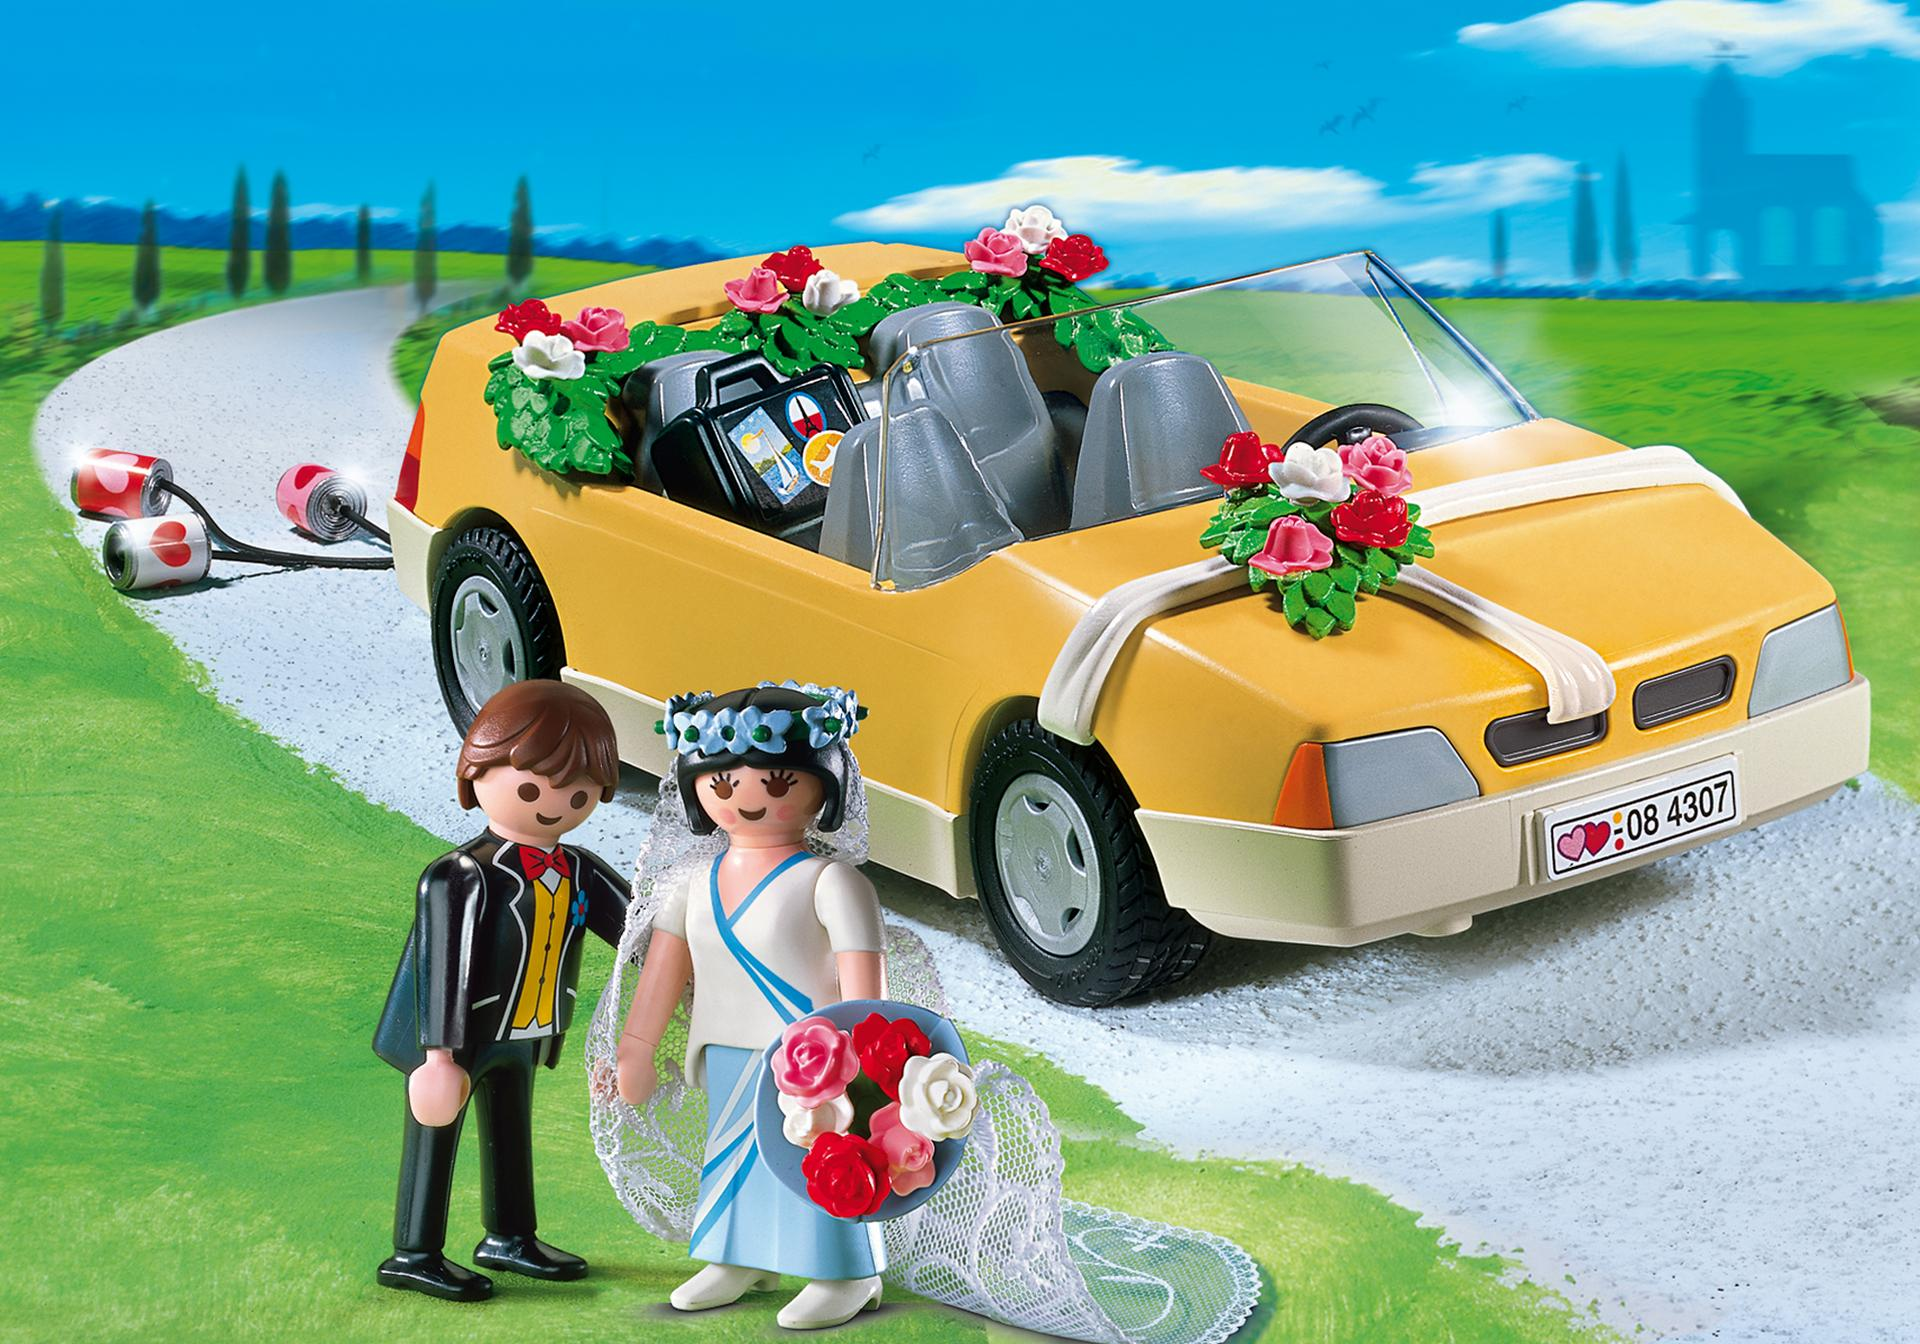 PLAYMOBIL Bouquet de Roses Mariée 4307 R710 MARIAGE 